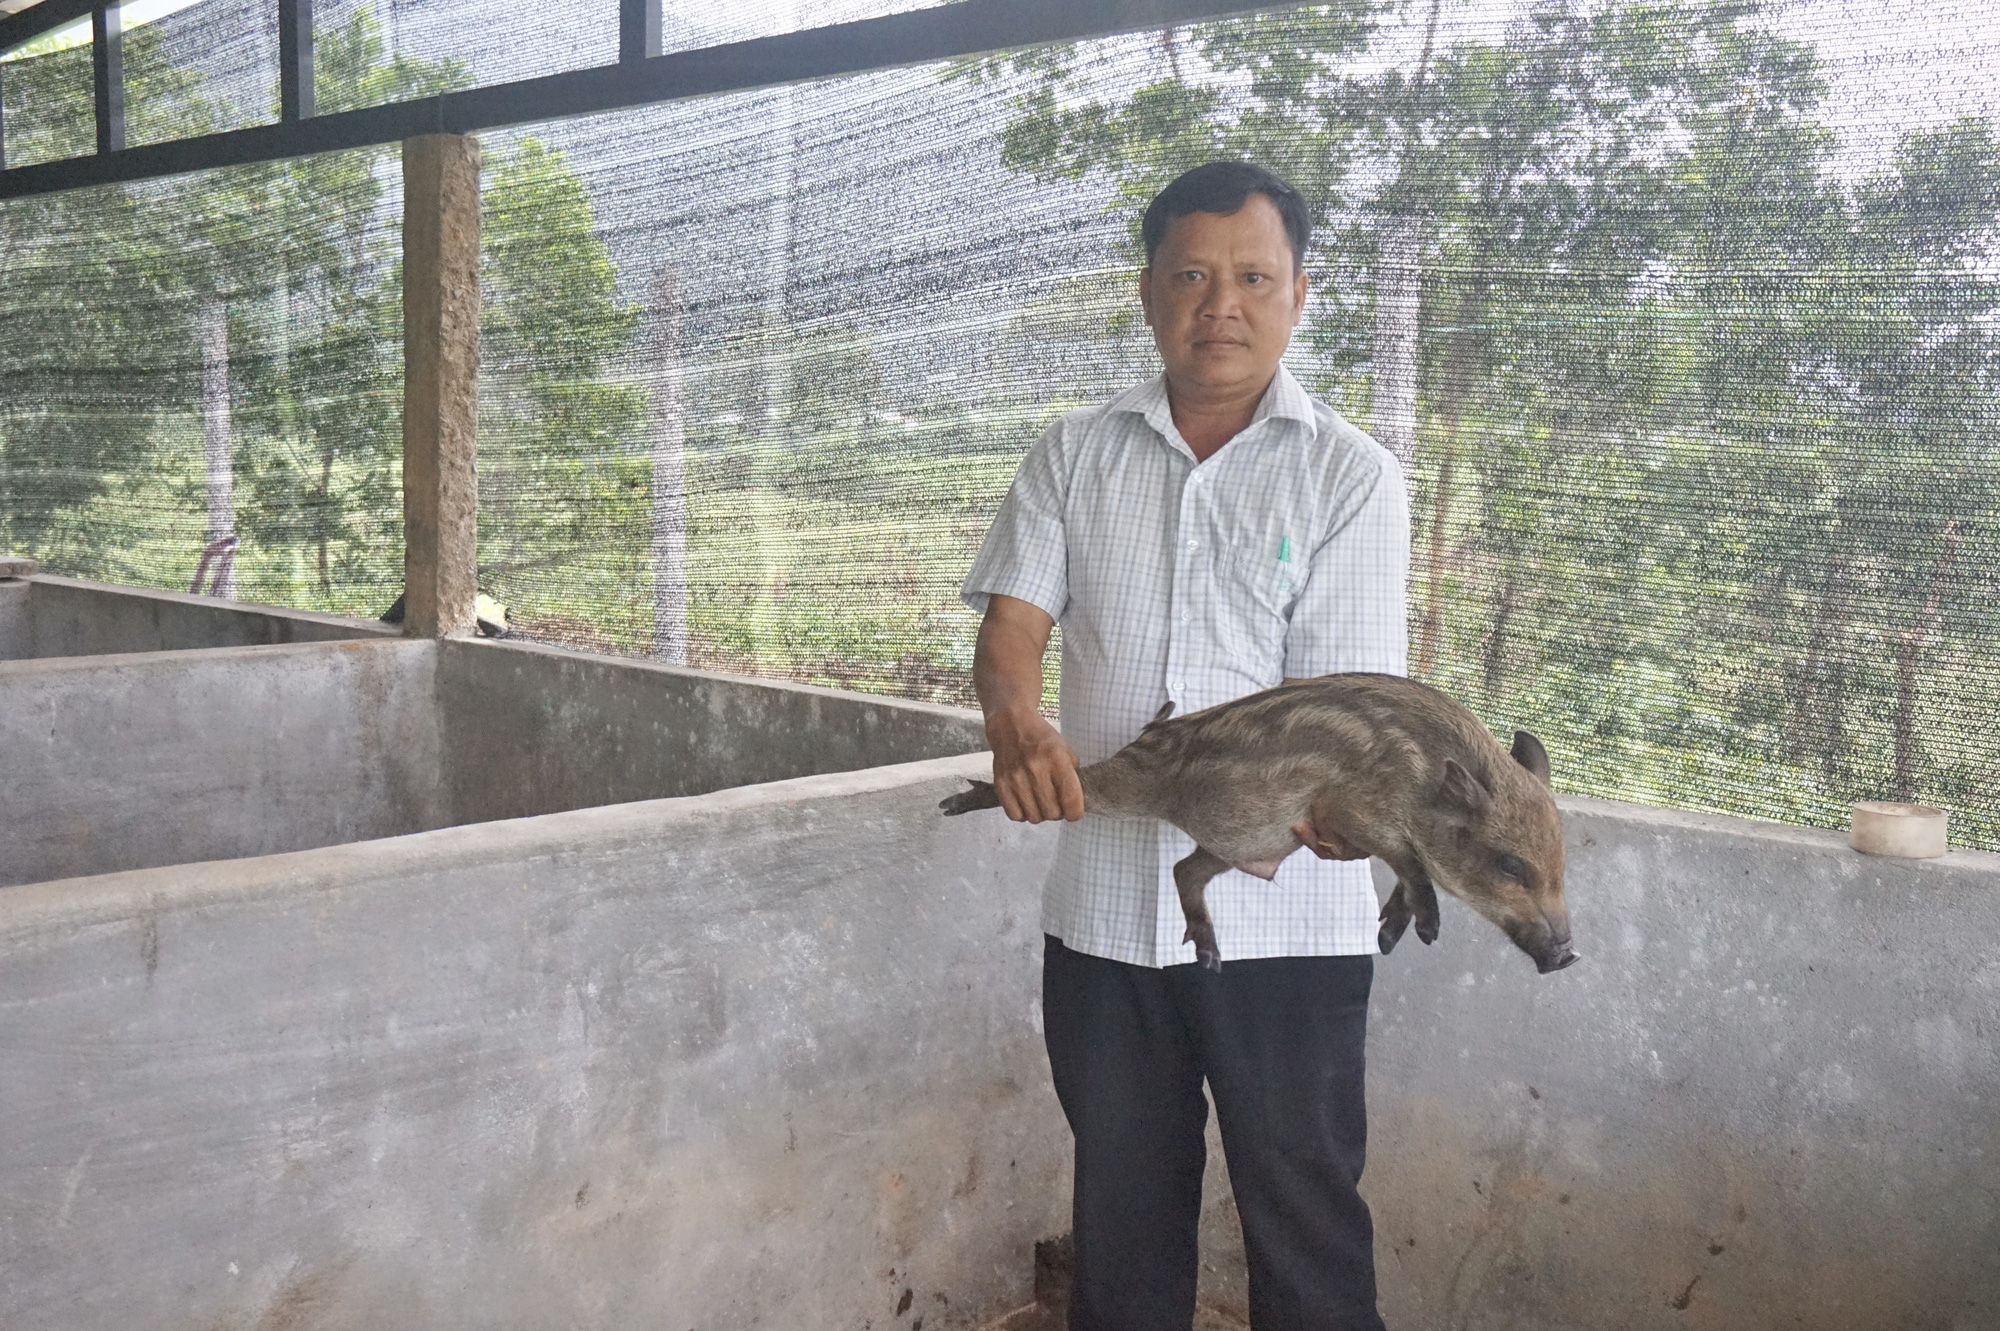 Đà Nẵng: Khởi nghiệp với mô hình nuôi heo rừng lai, một người con Cơ Tu có cuộc sống sung túc - Ảnh 1.